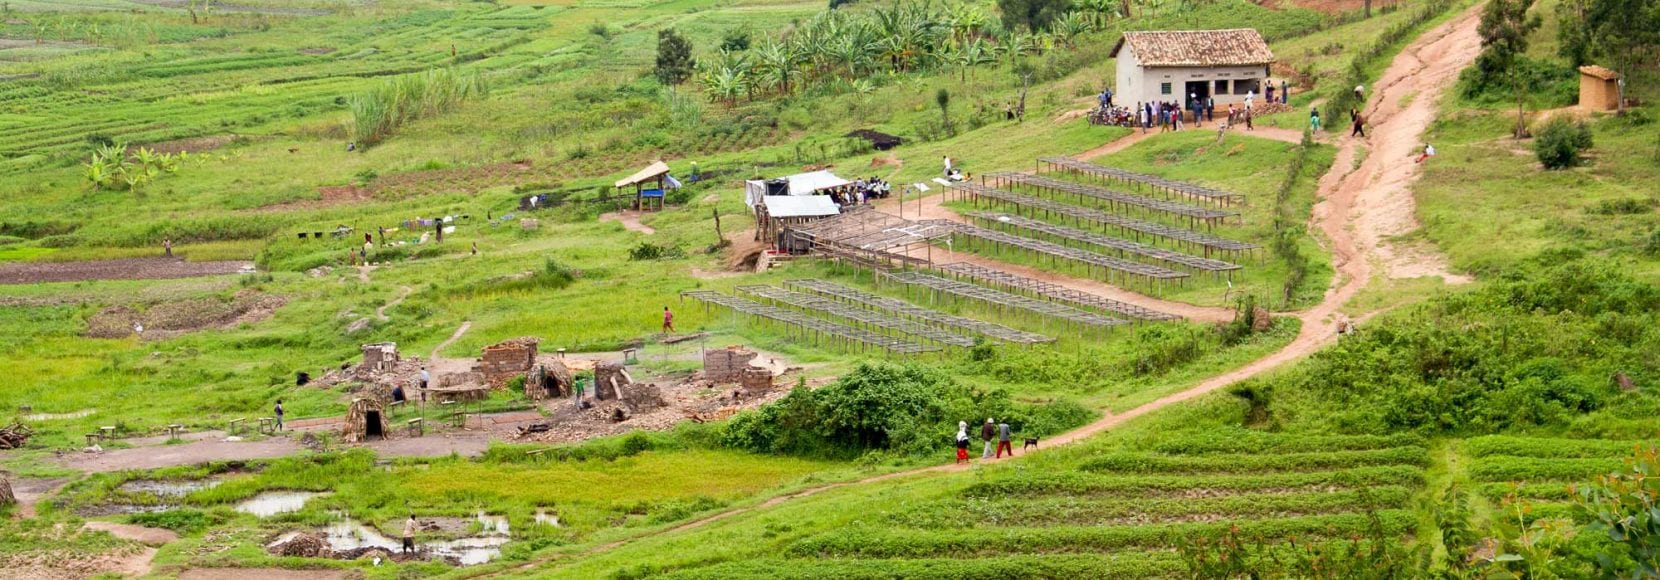 Rwanda farm